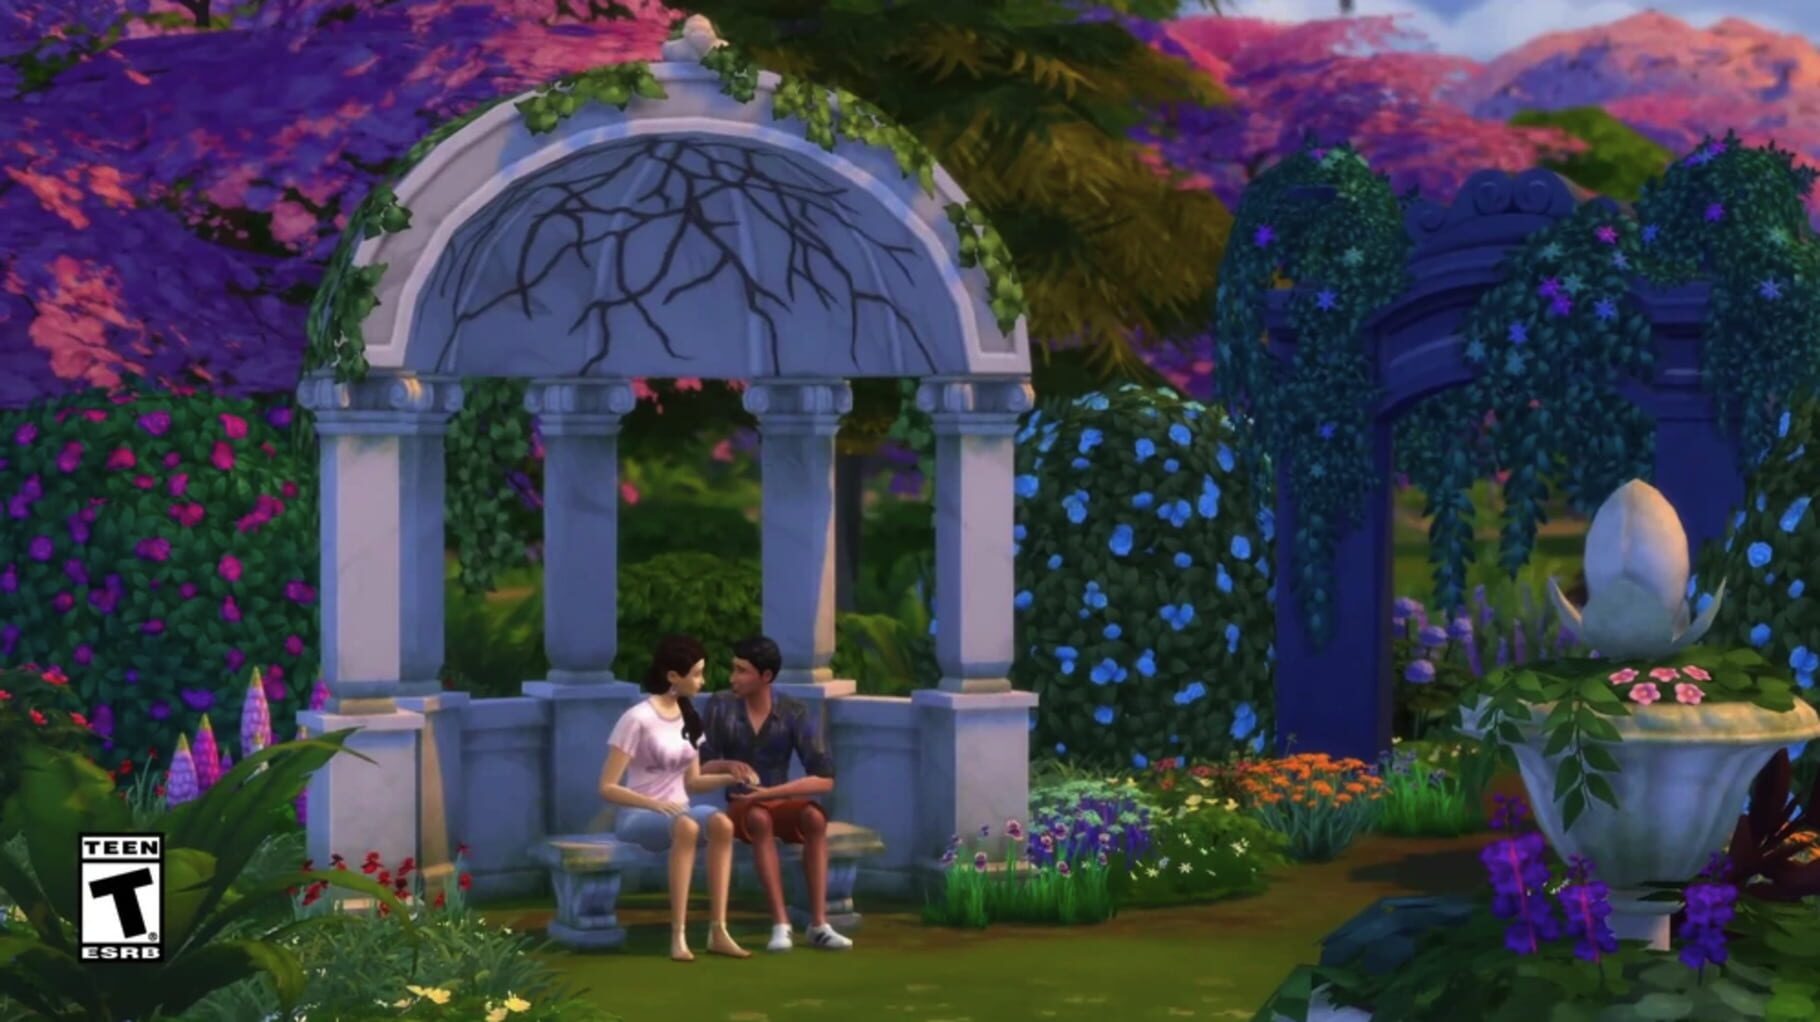 Captura de pantalla - The Sims 4: Romantic Garden Stuff